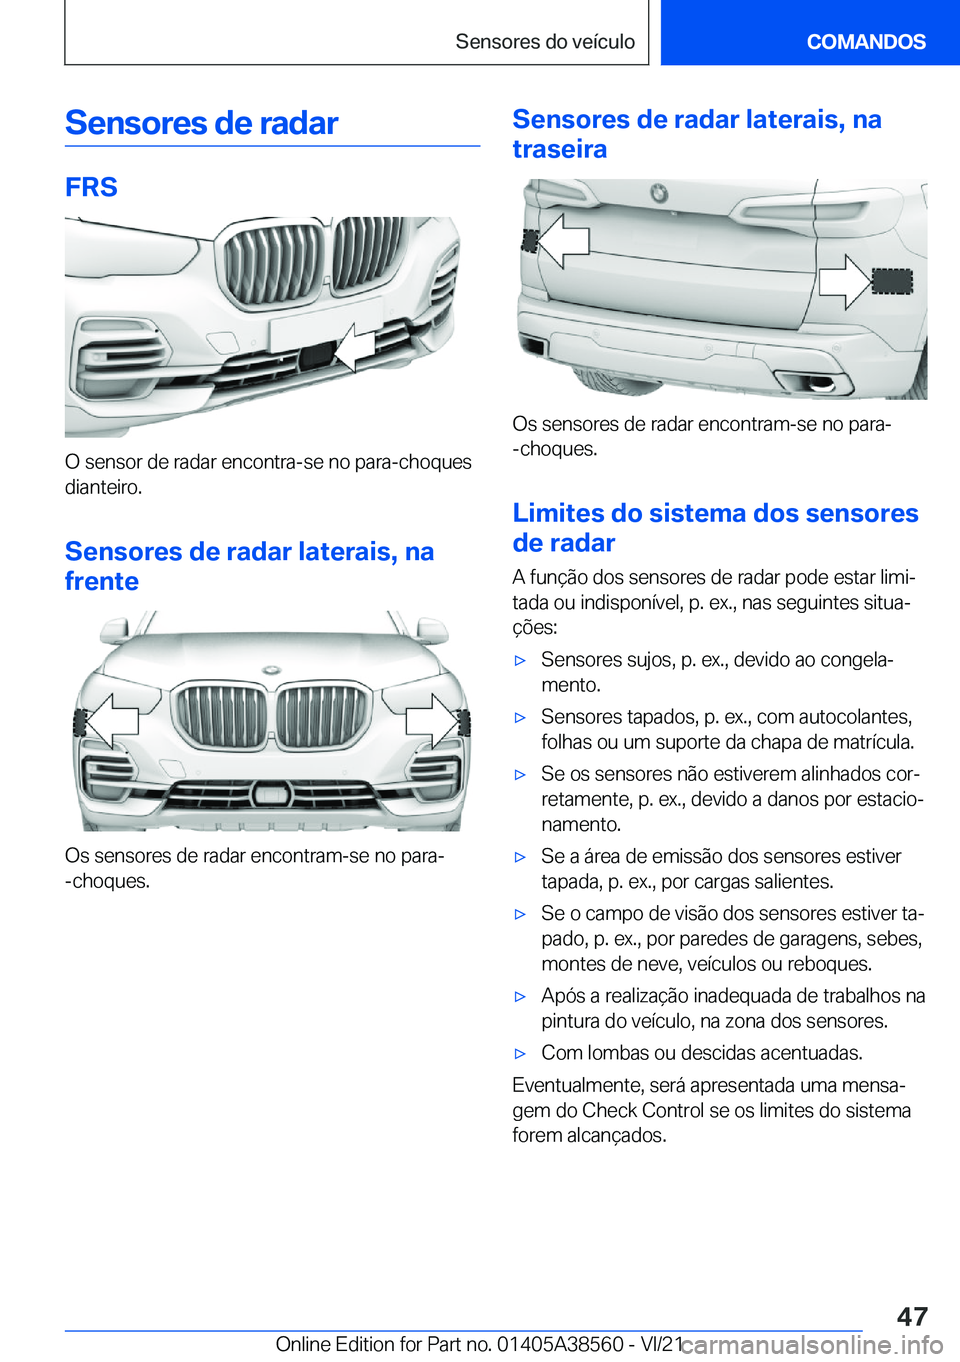 BMW X6 2022  Manual do condutor (in Portuguese) �S�e�n�s�o�r�e�s��d�e��r�a�d�a�r
�F�R�S
�O��s�e�n�s�o�r��d�e��r�a�d�a�r��e�n�c�o�n�t�r�a�-�s�e��n�o��p�a�r�a�-�c�h�o�q�u�e�s�d�i�a�n�t�e�i�r�o�.
�S�e�n�s�o�r�e�s��d�e��r�a�d�a�r��l�a�t�e�r�